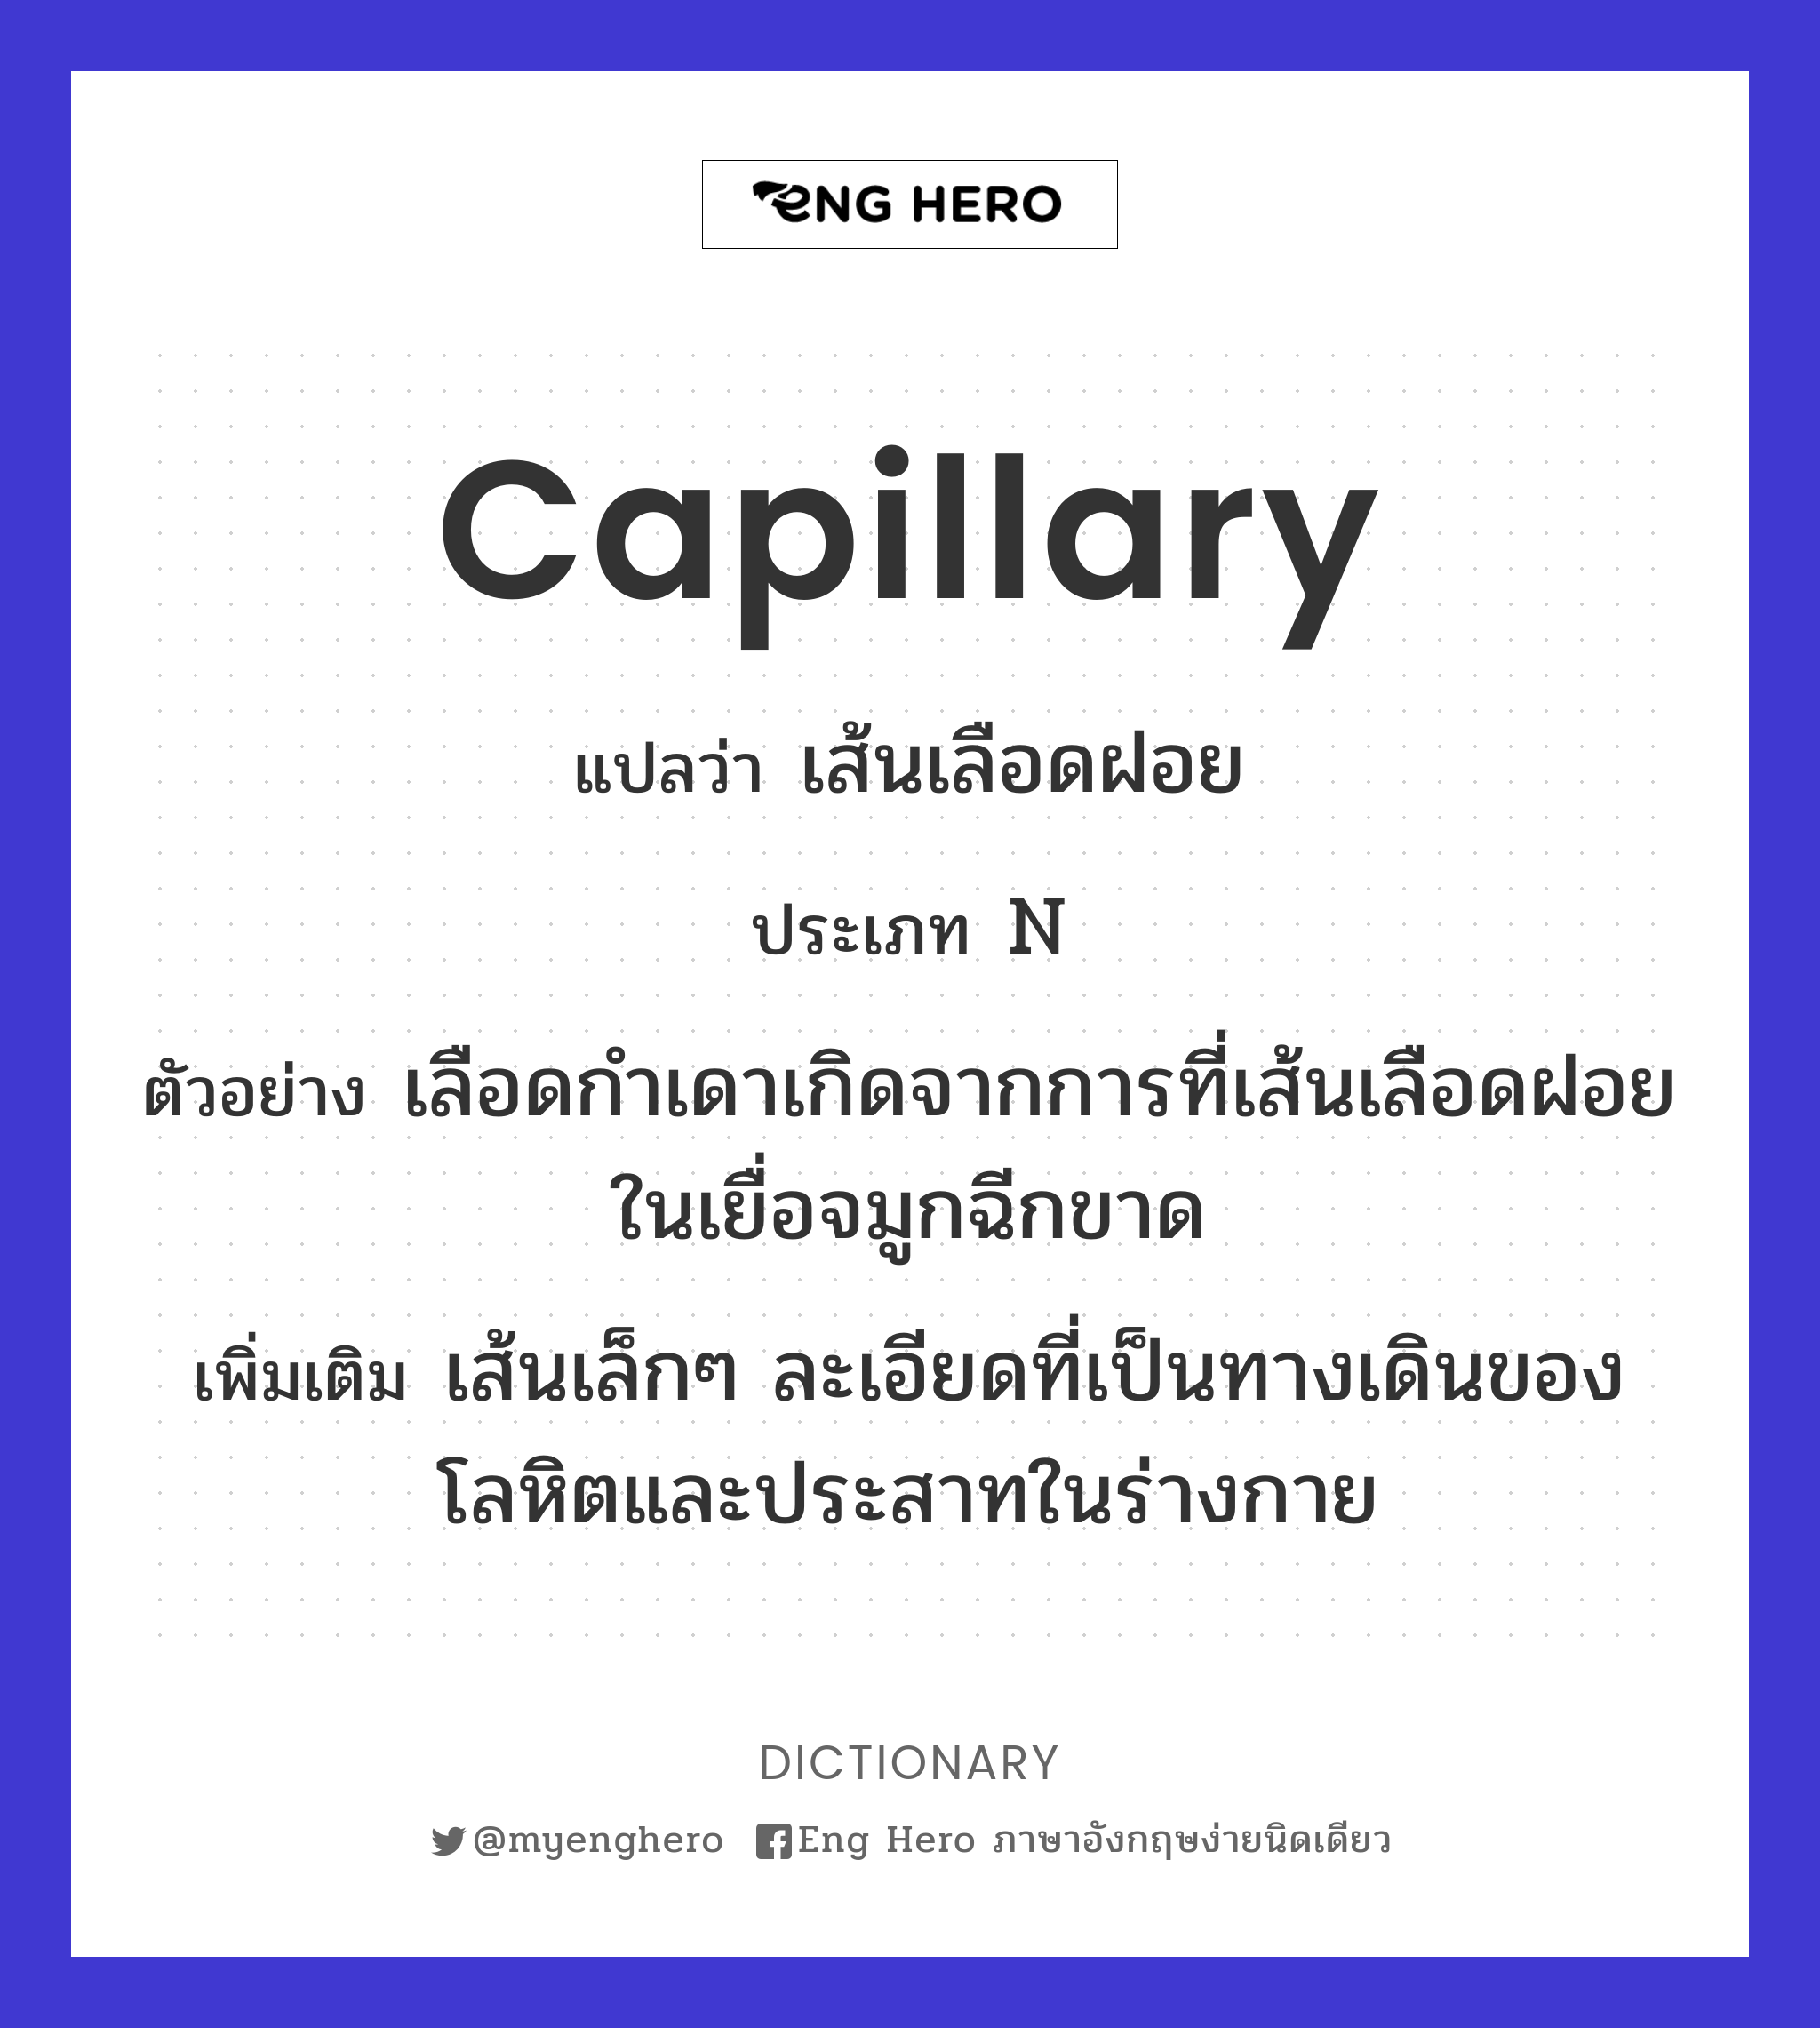 capillary